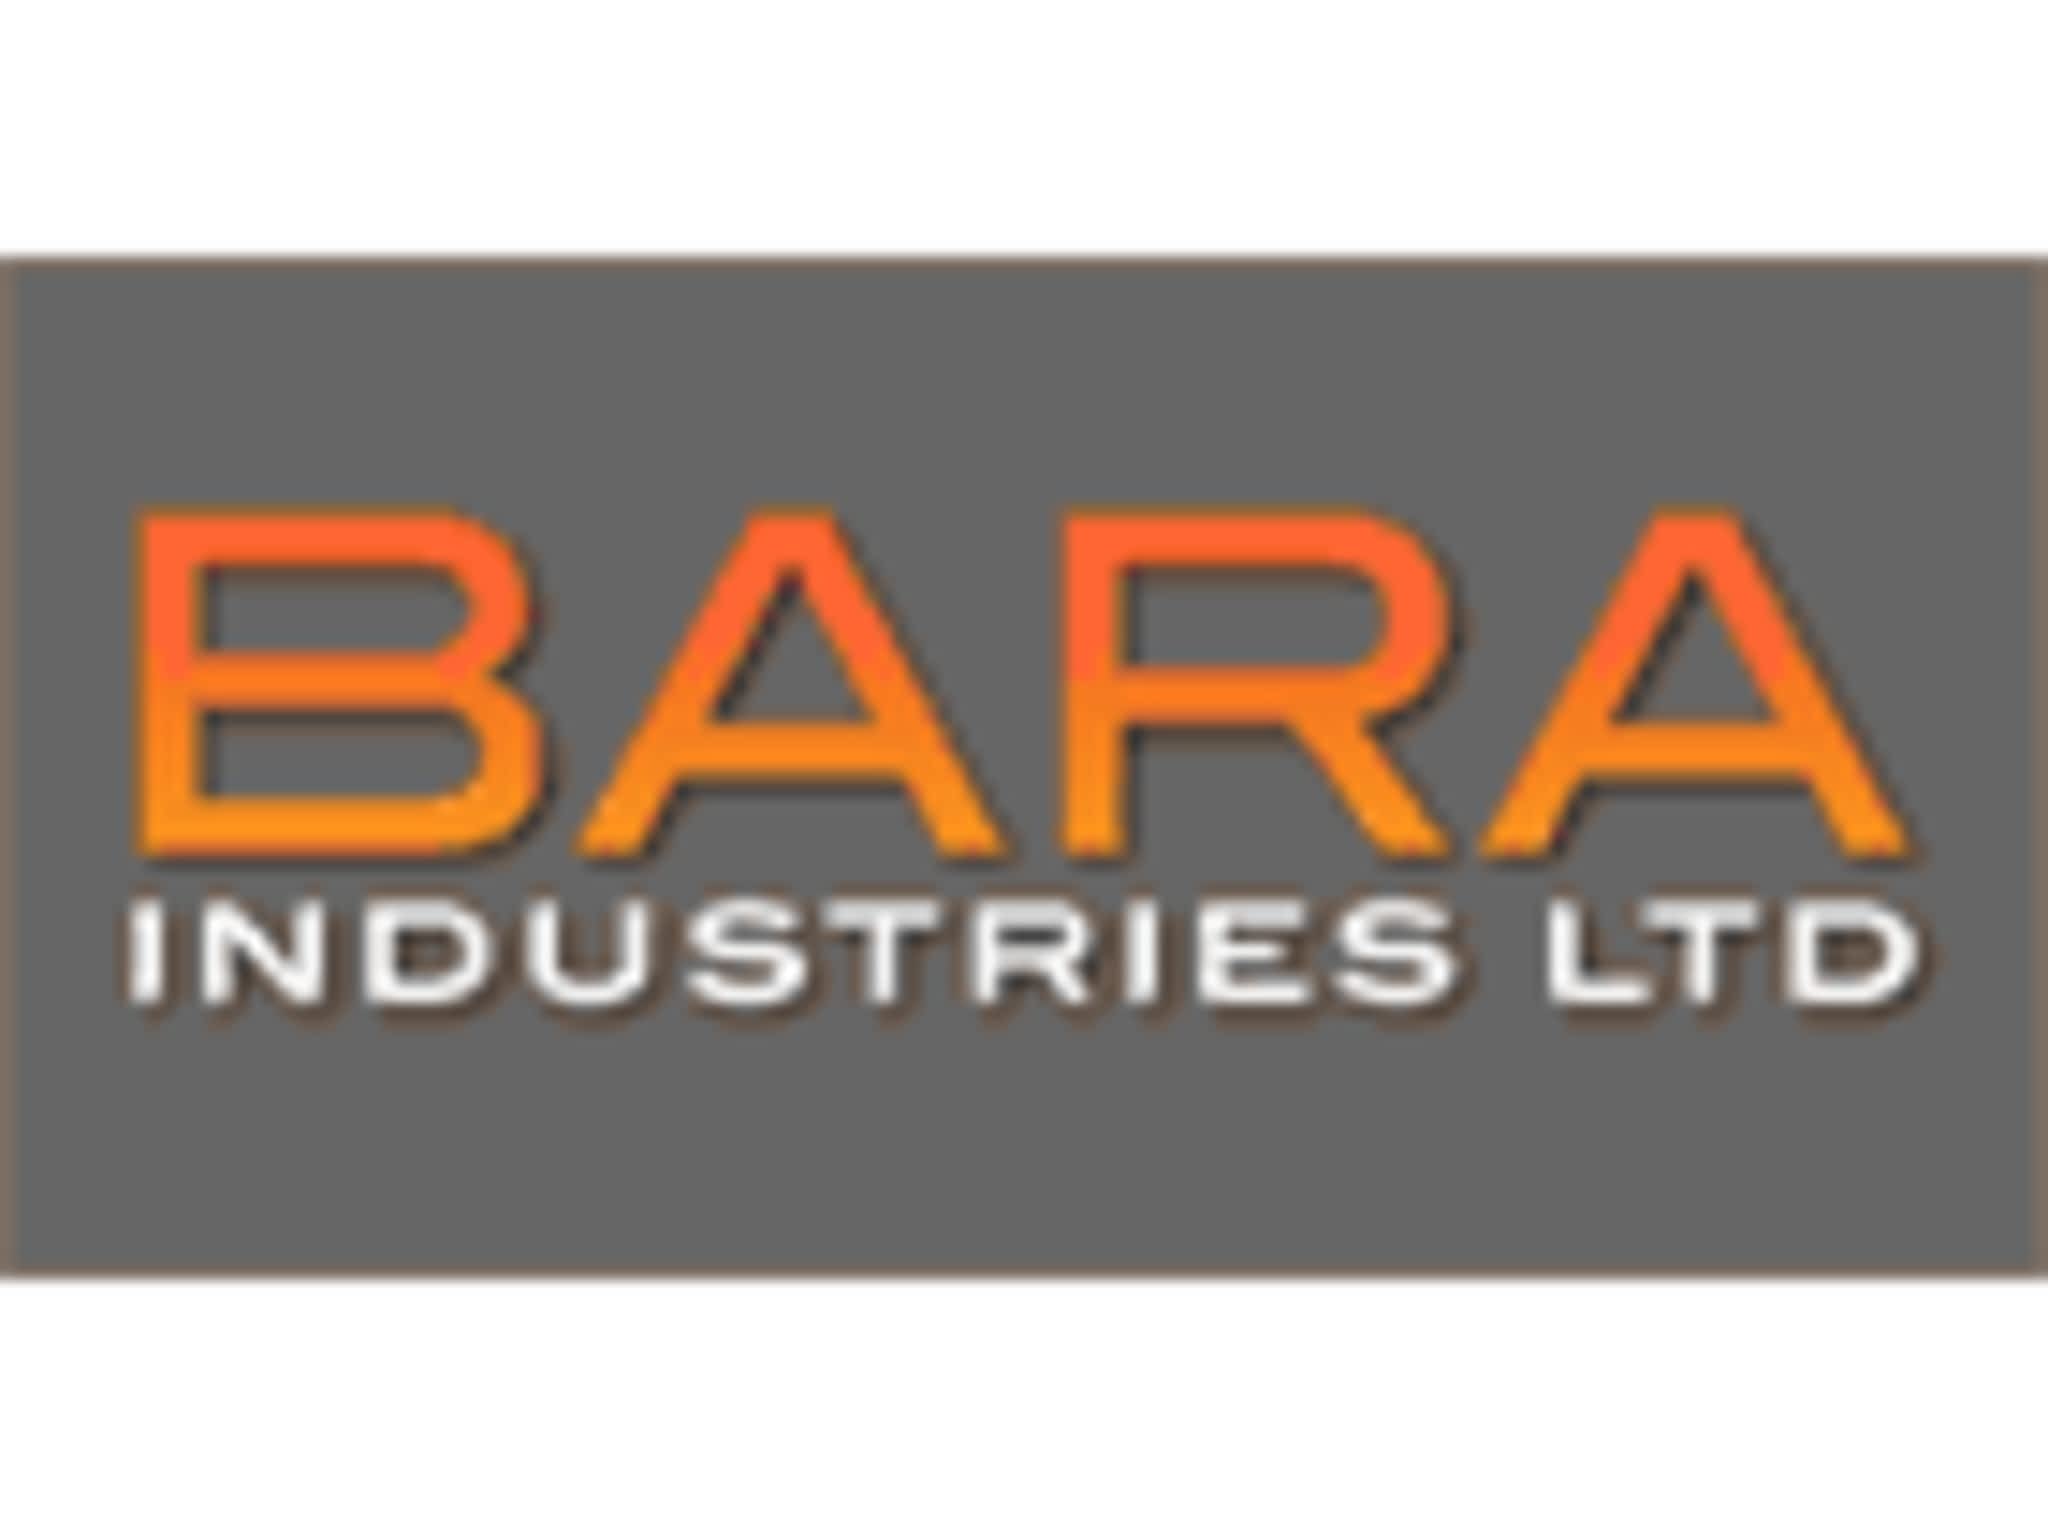 photo Bara Industries Ltd